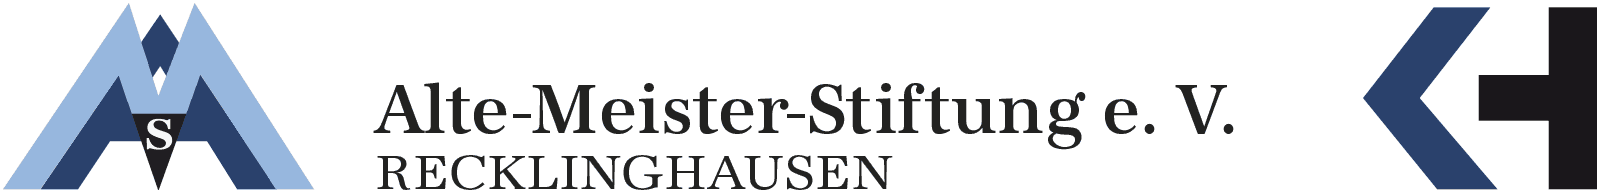 Logo Alte Meister Stiftung Recklinghausen